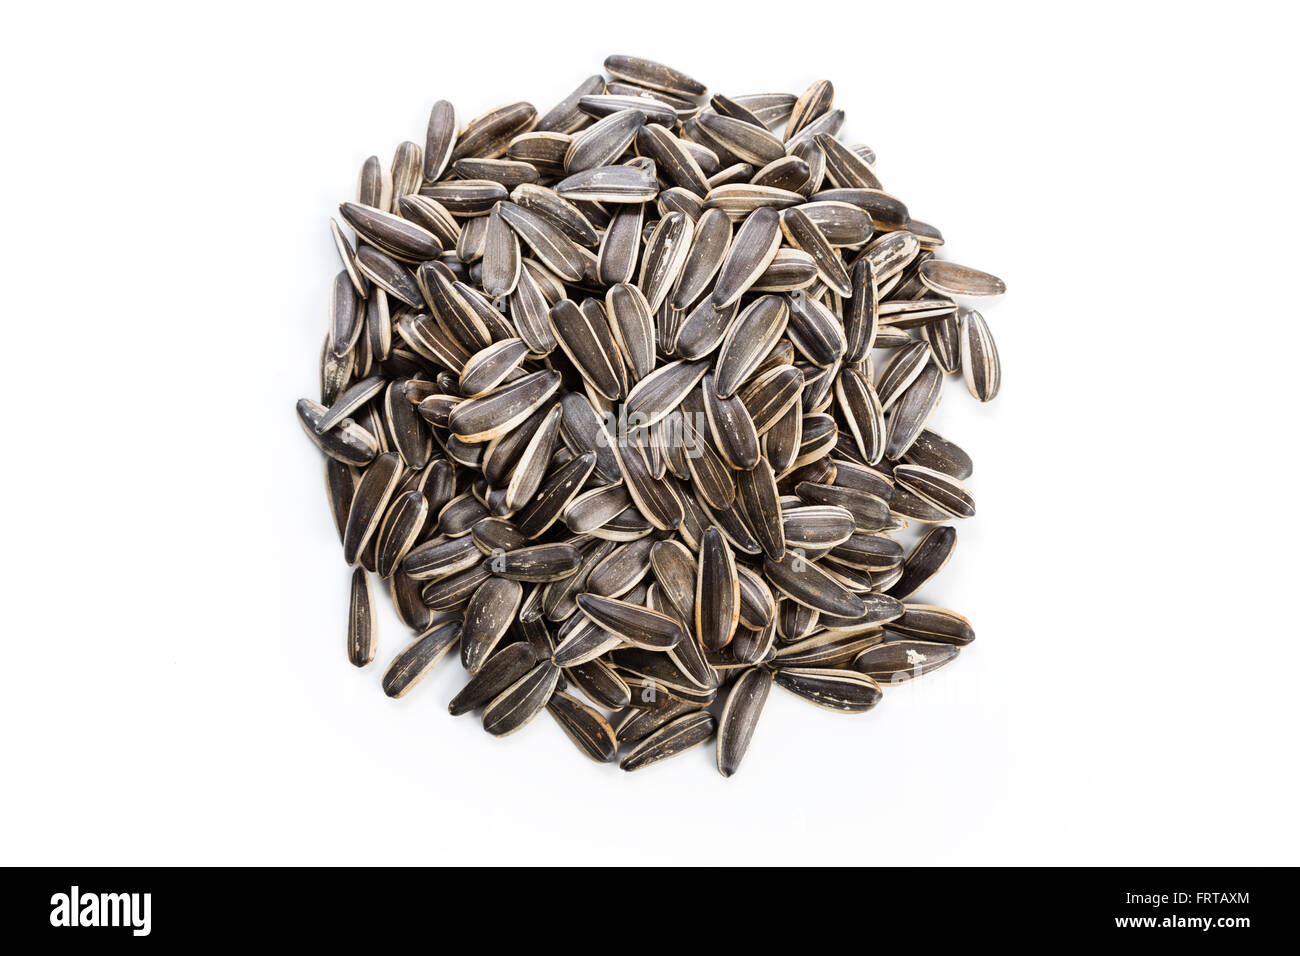 Les graines de tournesol, de l'ingrédient alimentaire avec un fond blanc. Banque D'Images